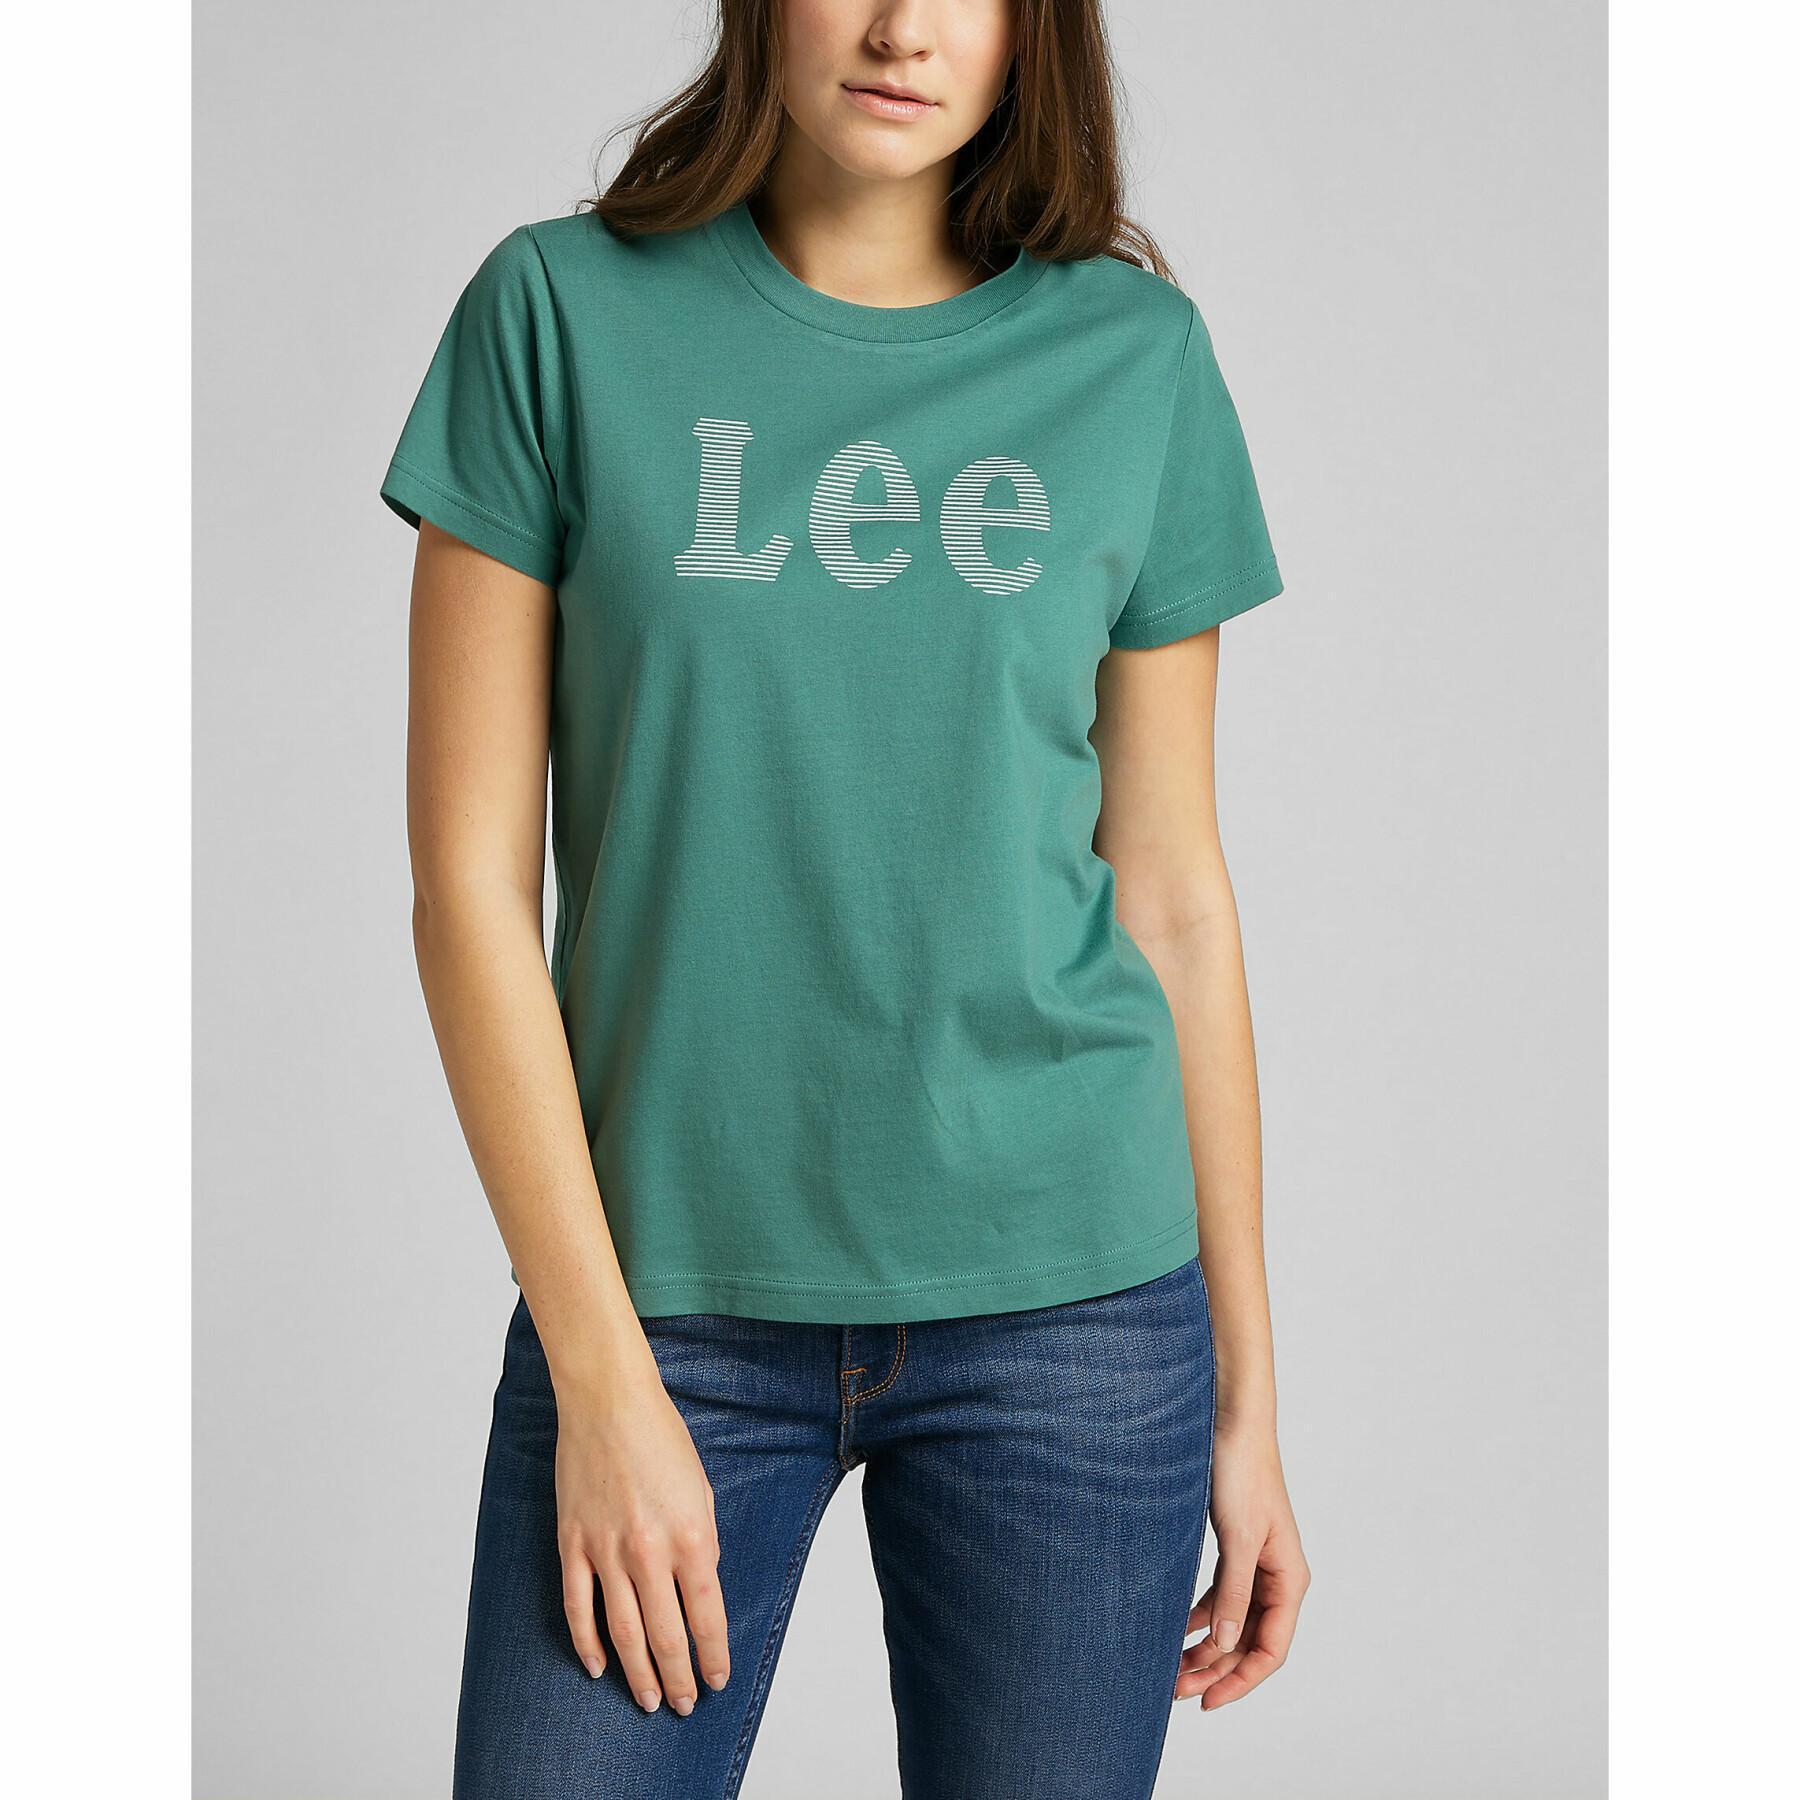 Frauen-T-Shirt Lee